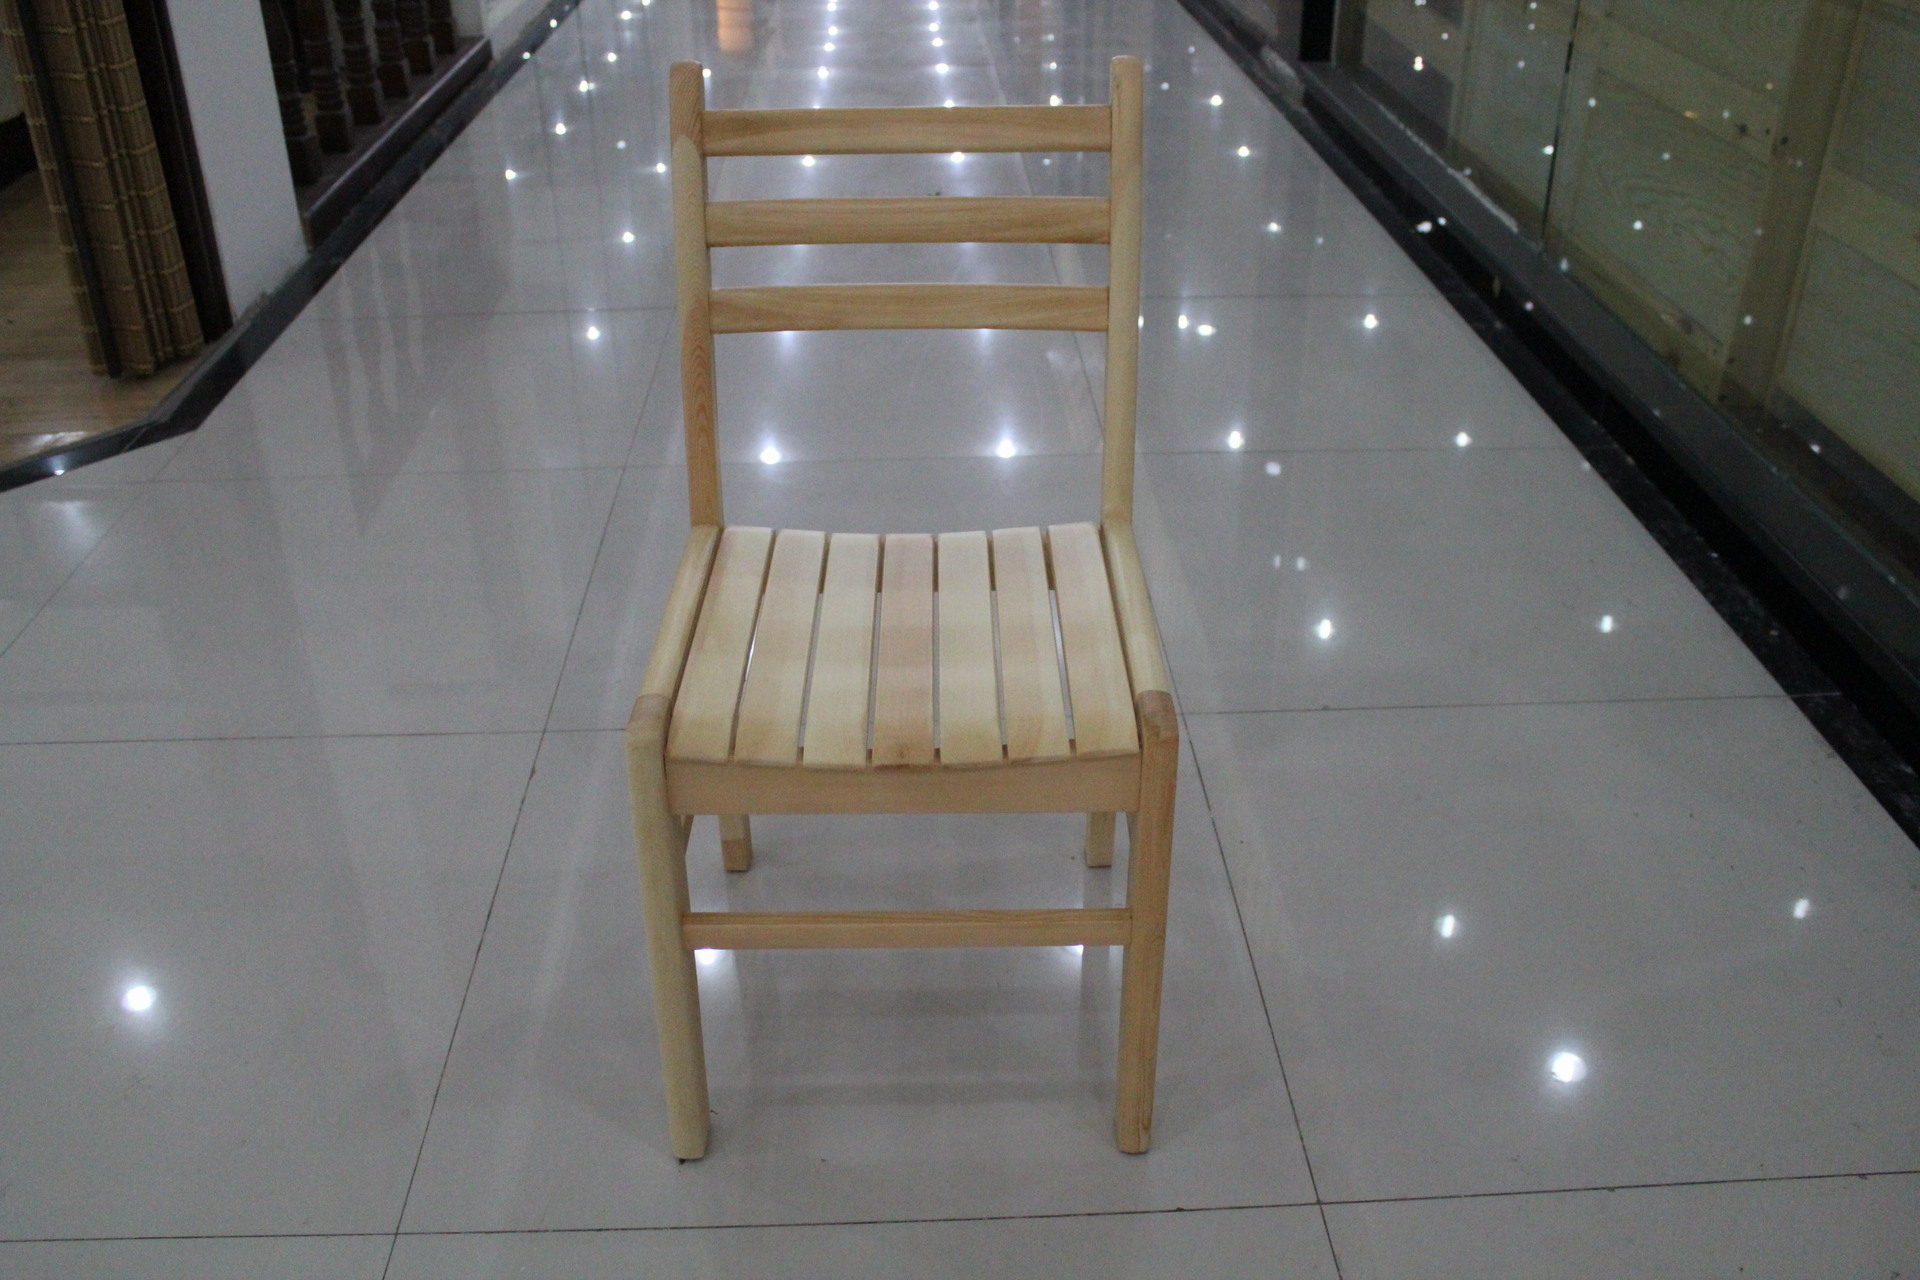 松木椅子 最结实的凳子,全铆钉无螺钉 实木凳子椅子,西安家具图片_10